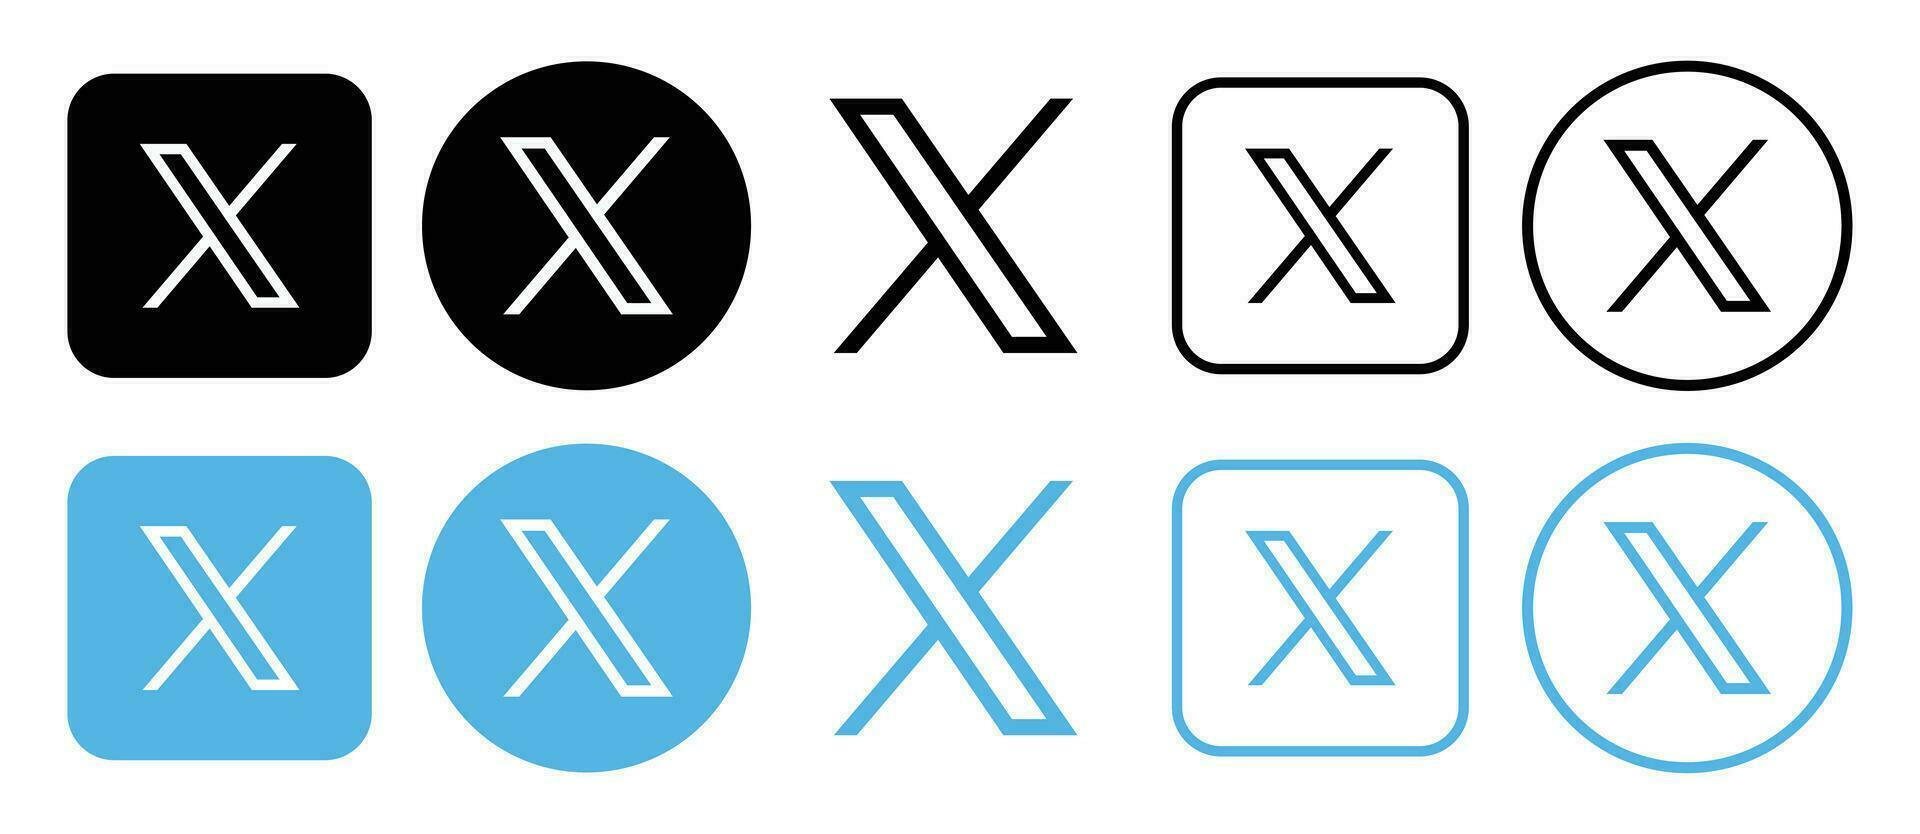 Twitter new logo . Twitter icons. New twitter logo x 2023. Twitter logo. x vector